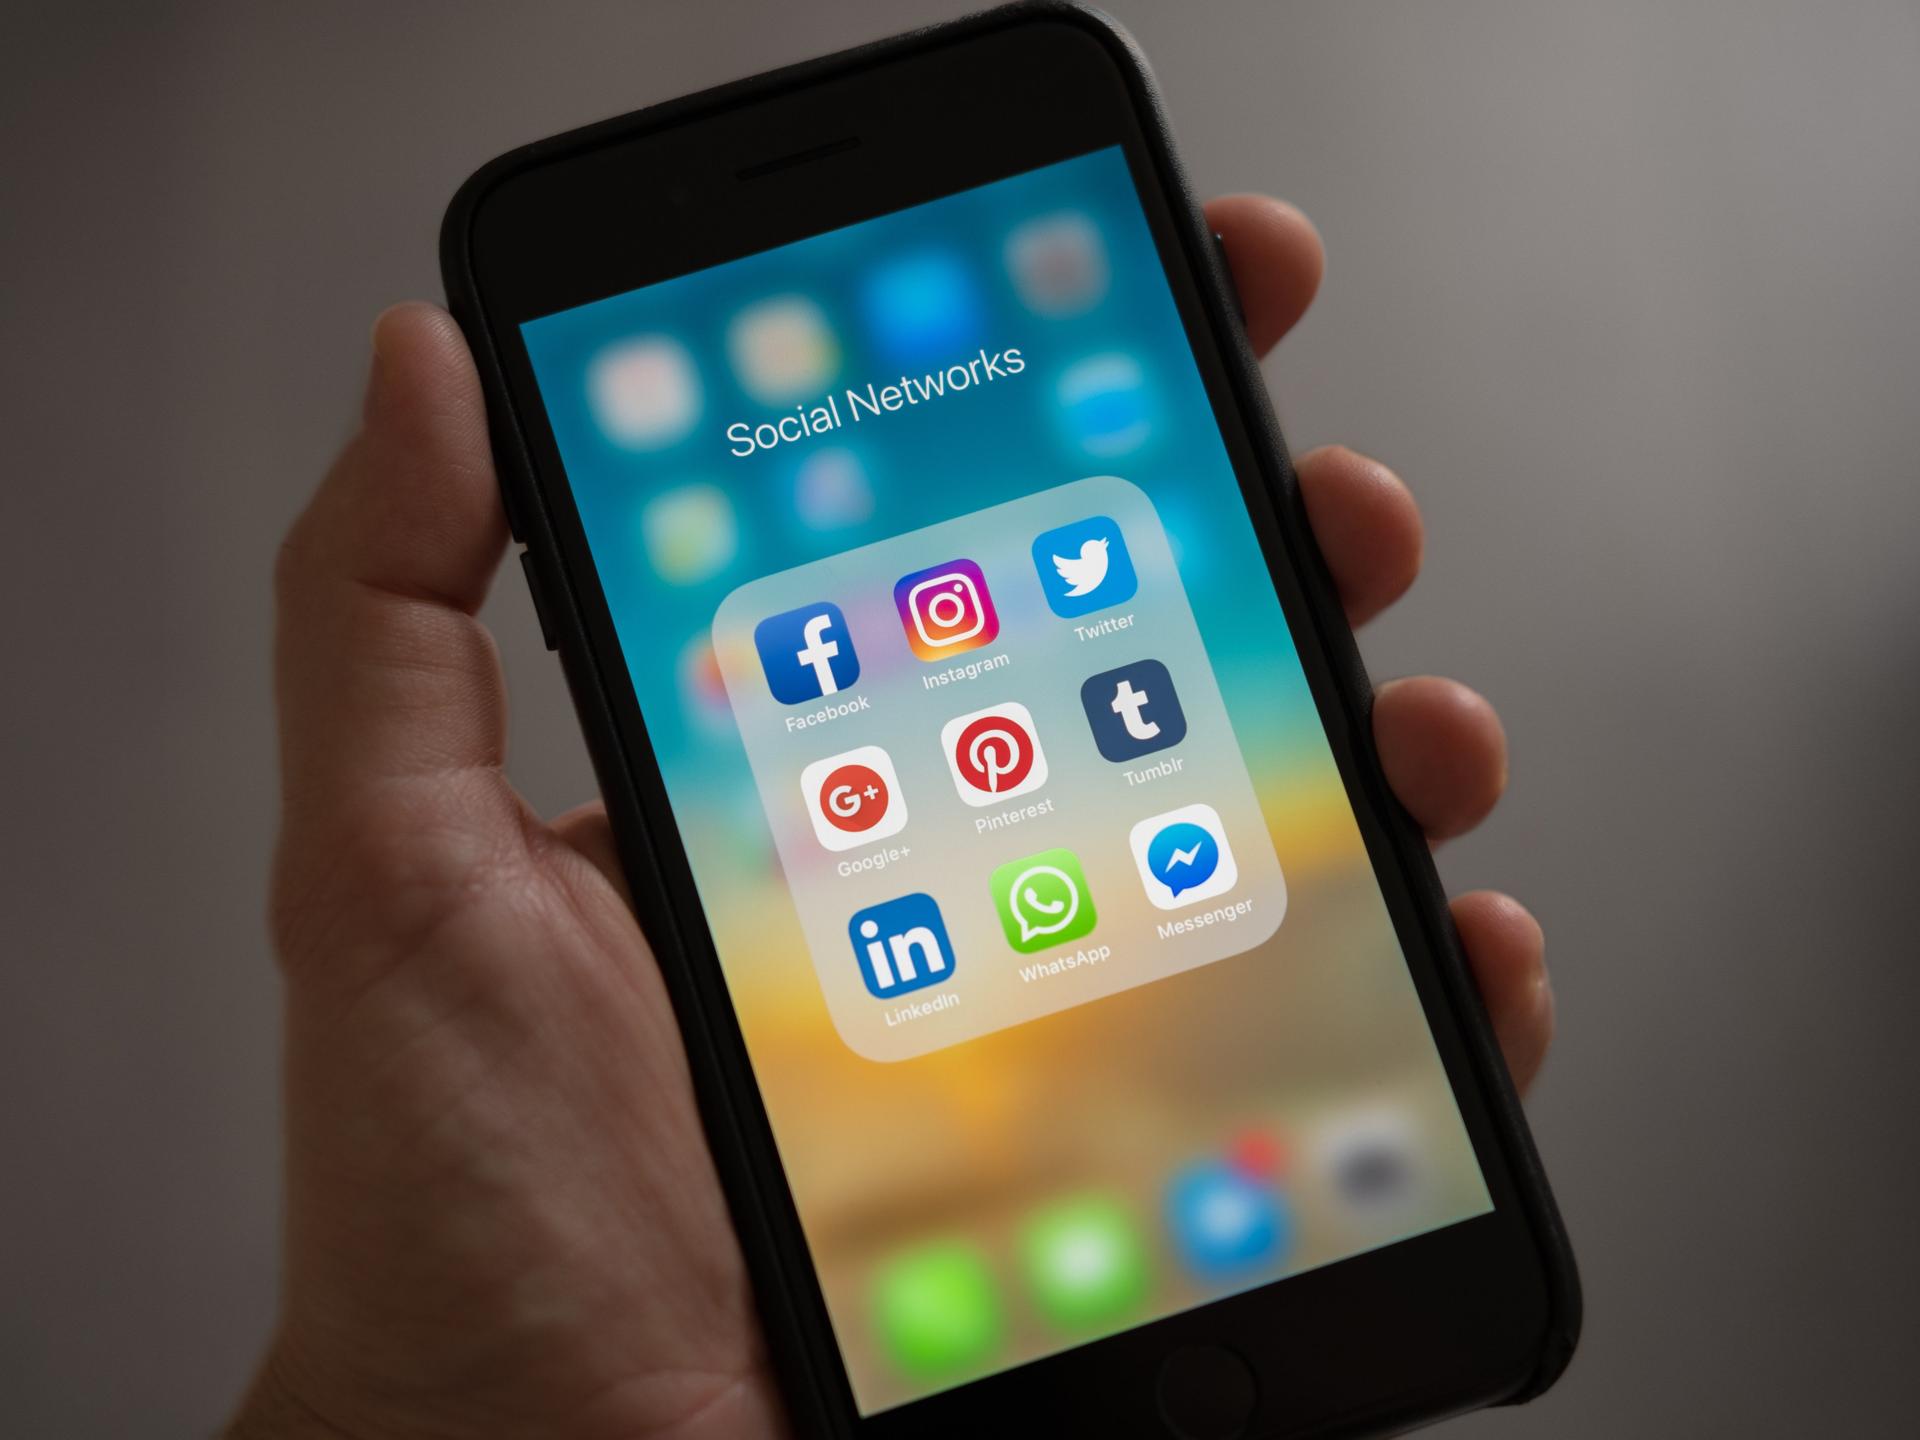 Auf einem Smartphone-Display sind verschiedene Social Apps zu sehen wie Instagram, Facebook und Pinterest.